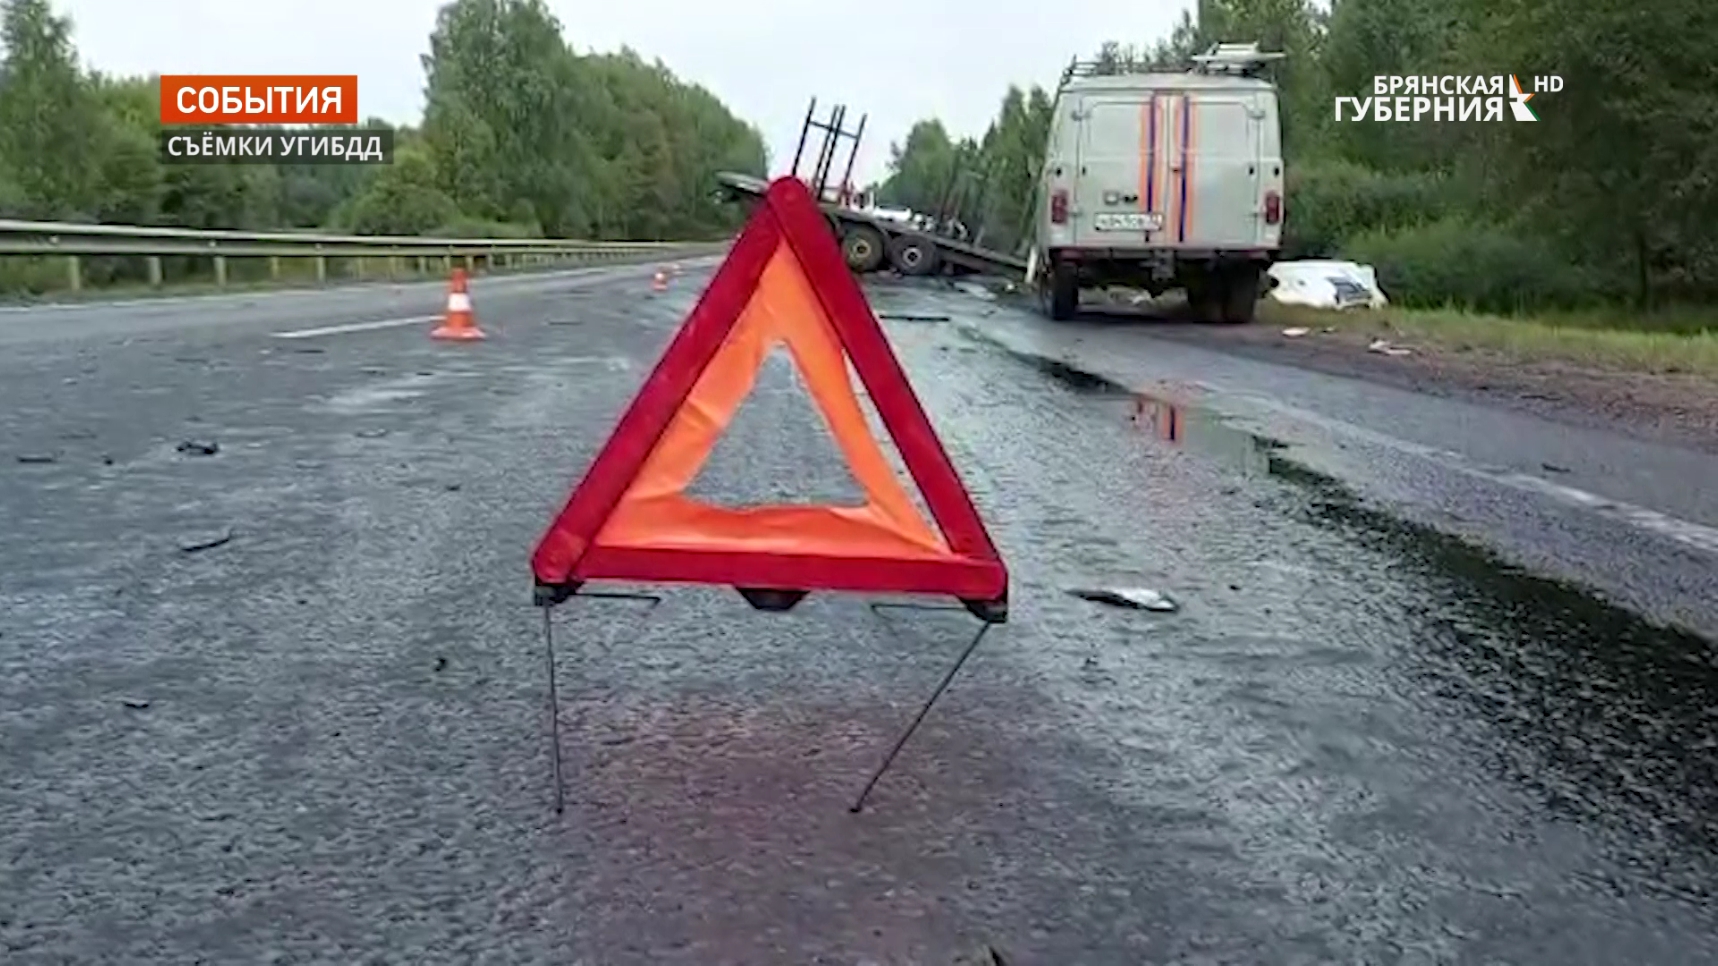 В Дубровском районе Брянской области произошла авария со смертельным исходом